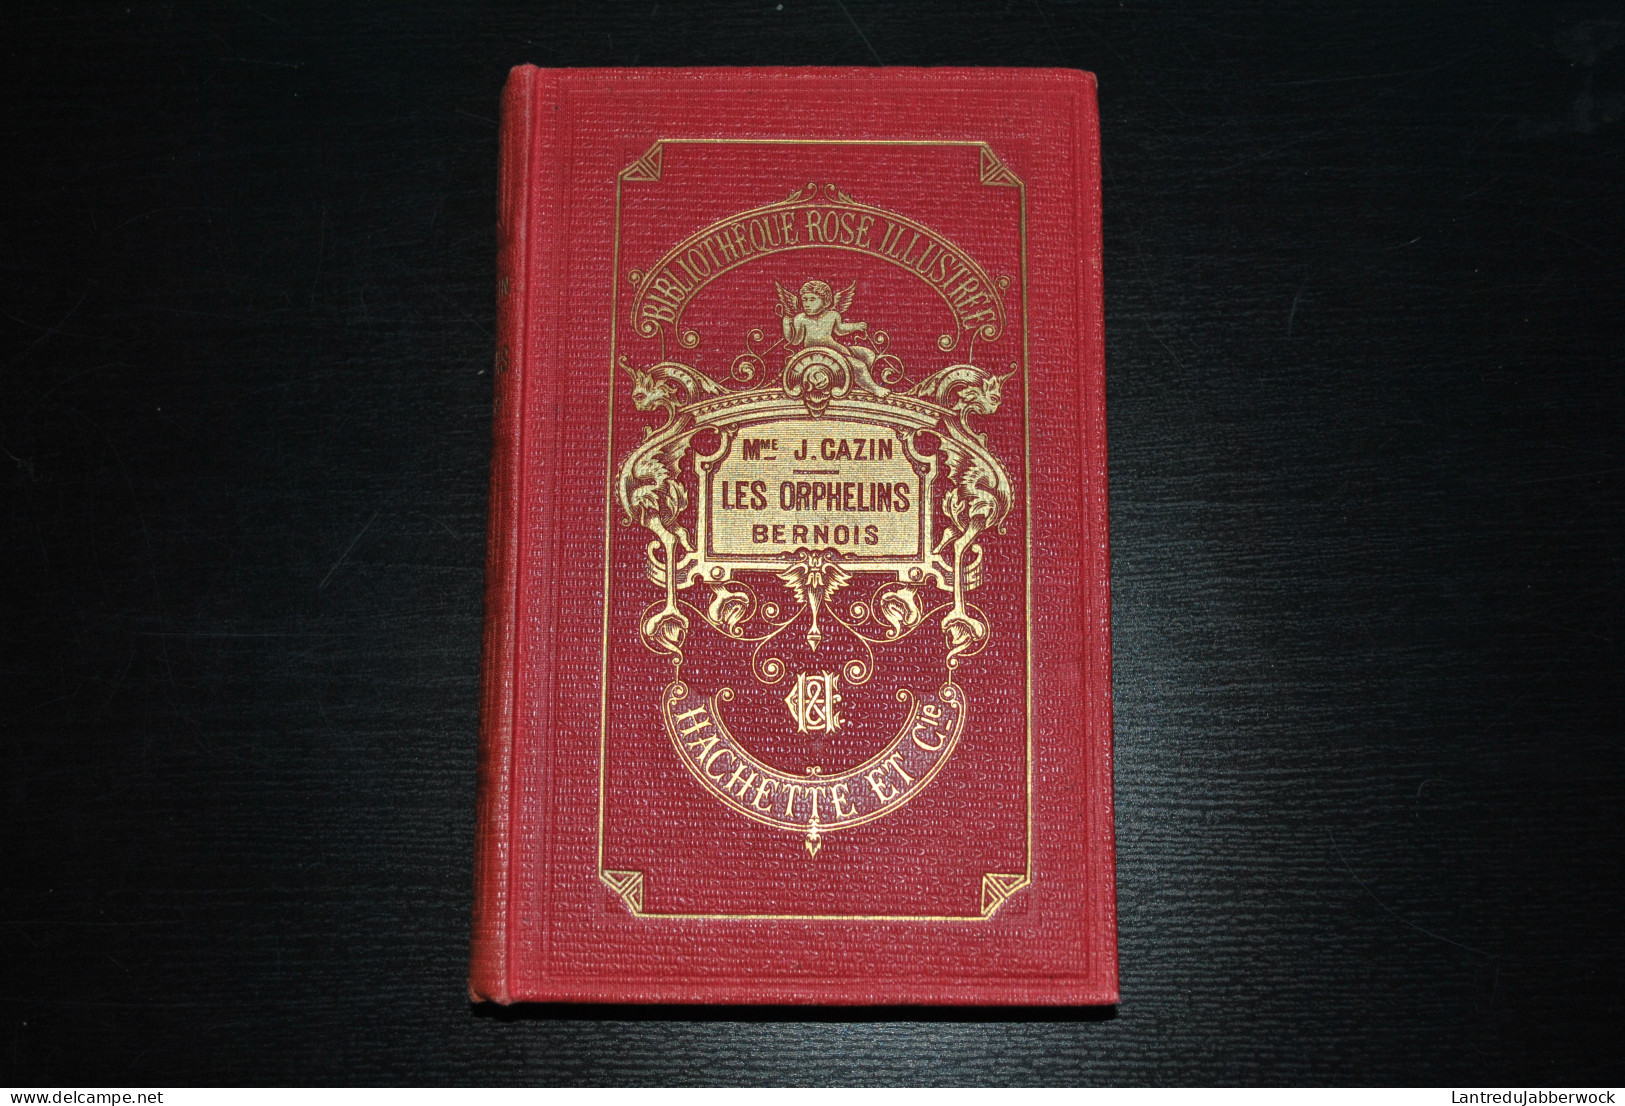 LES ORPHELINS BERNOIS PAR MME JEANNE CAZIN BIBLIOTHEQUE ROSE ILLUSTREE HACHETTE 1909 TRANCHE DOREE ILLUSTRATION GIRARDET - Bibliotheque Rose